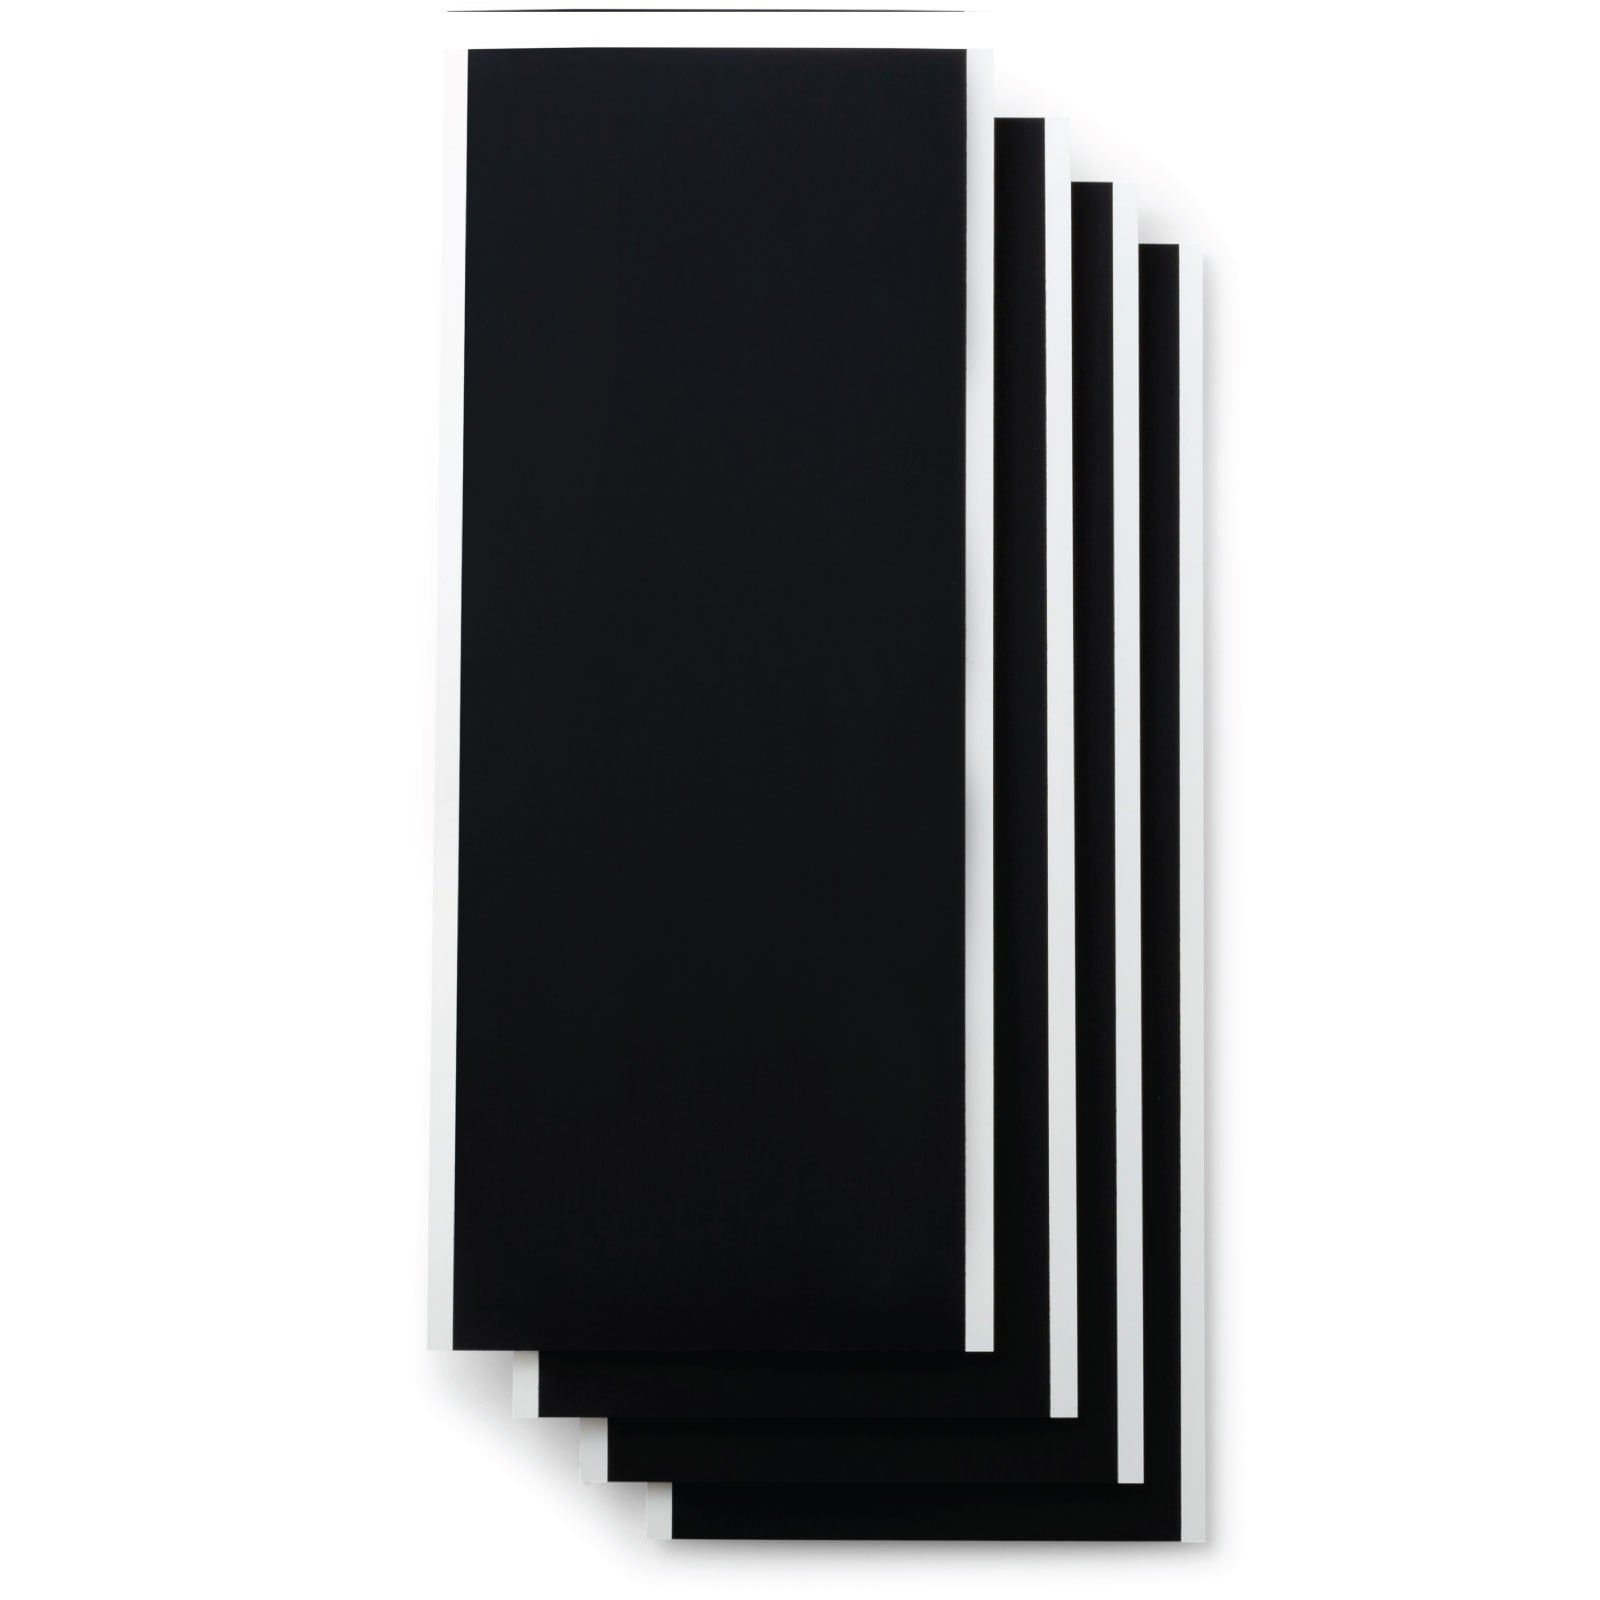 Cricut Joy Smart Label Writable Vinyl White & Black Permanent Bundle